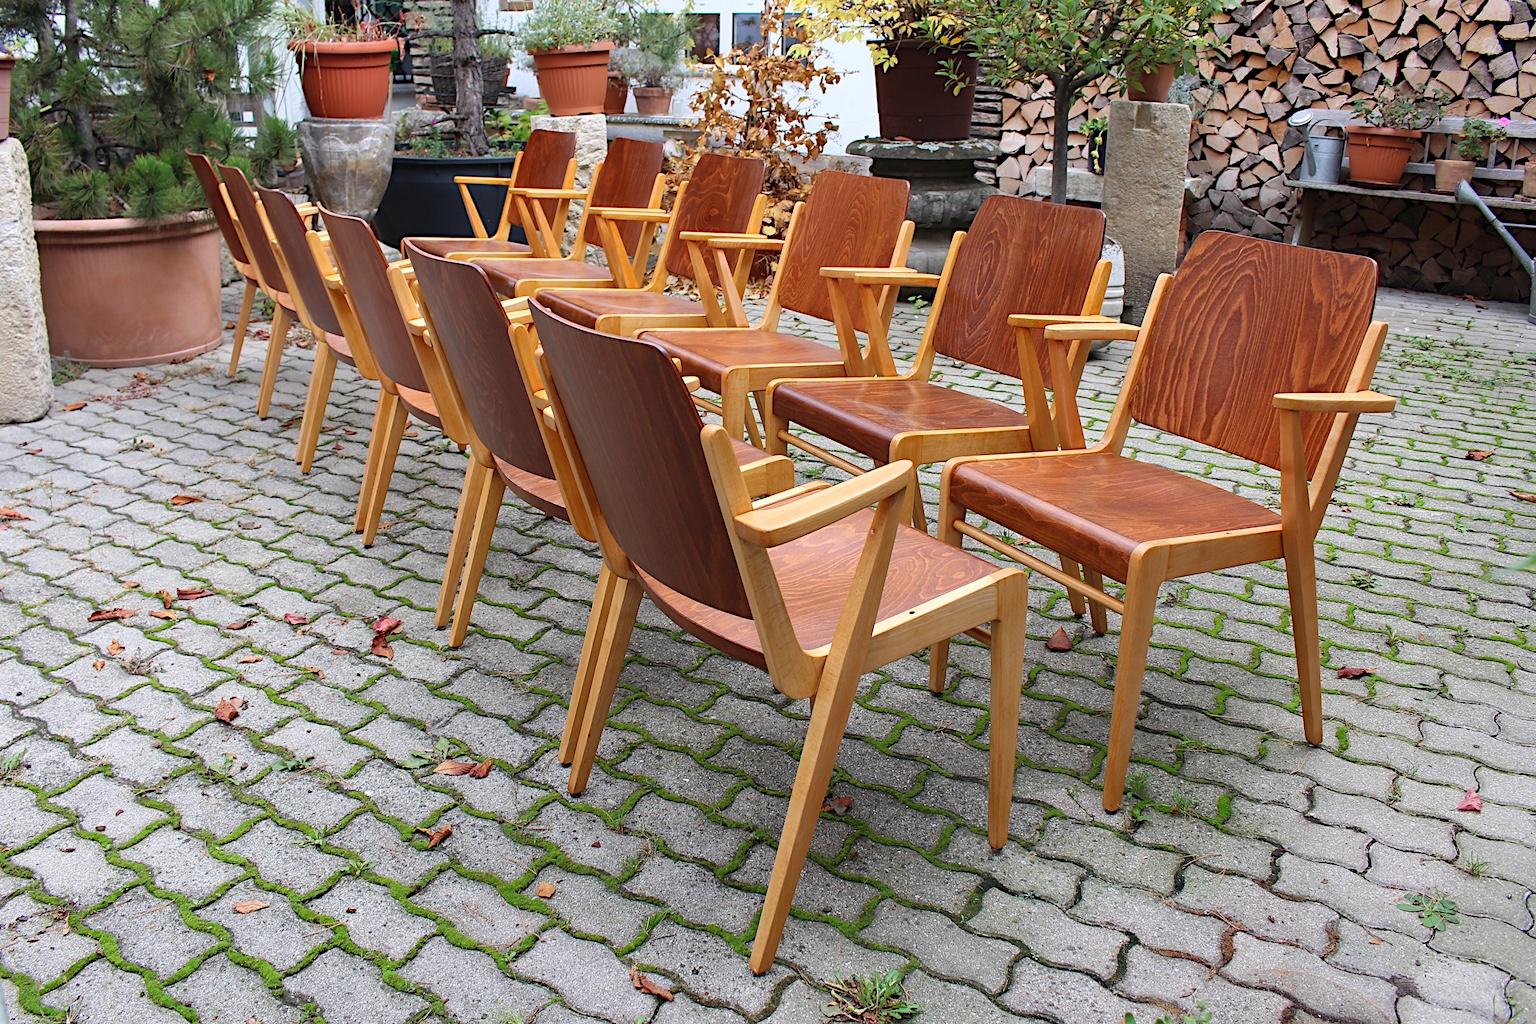 Douze ( 12 ) fauteuils ou chaises de salle à manger vintage en hêtre bicolore par Franz Schuster pour Wiesner-Hager 1959 Vienne.
Un ensemble étonnant et confortable de douze chaises de salle à manger bicolores avec accoudoirs dans une magnifique